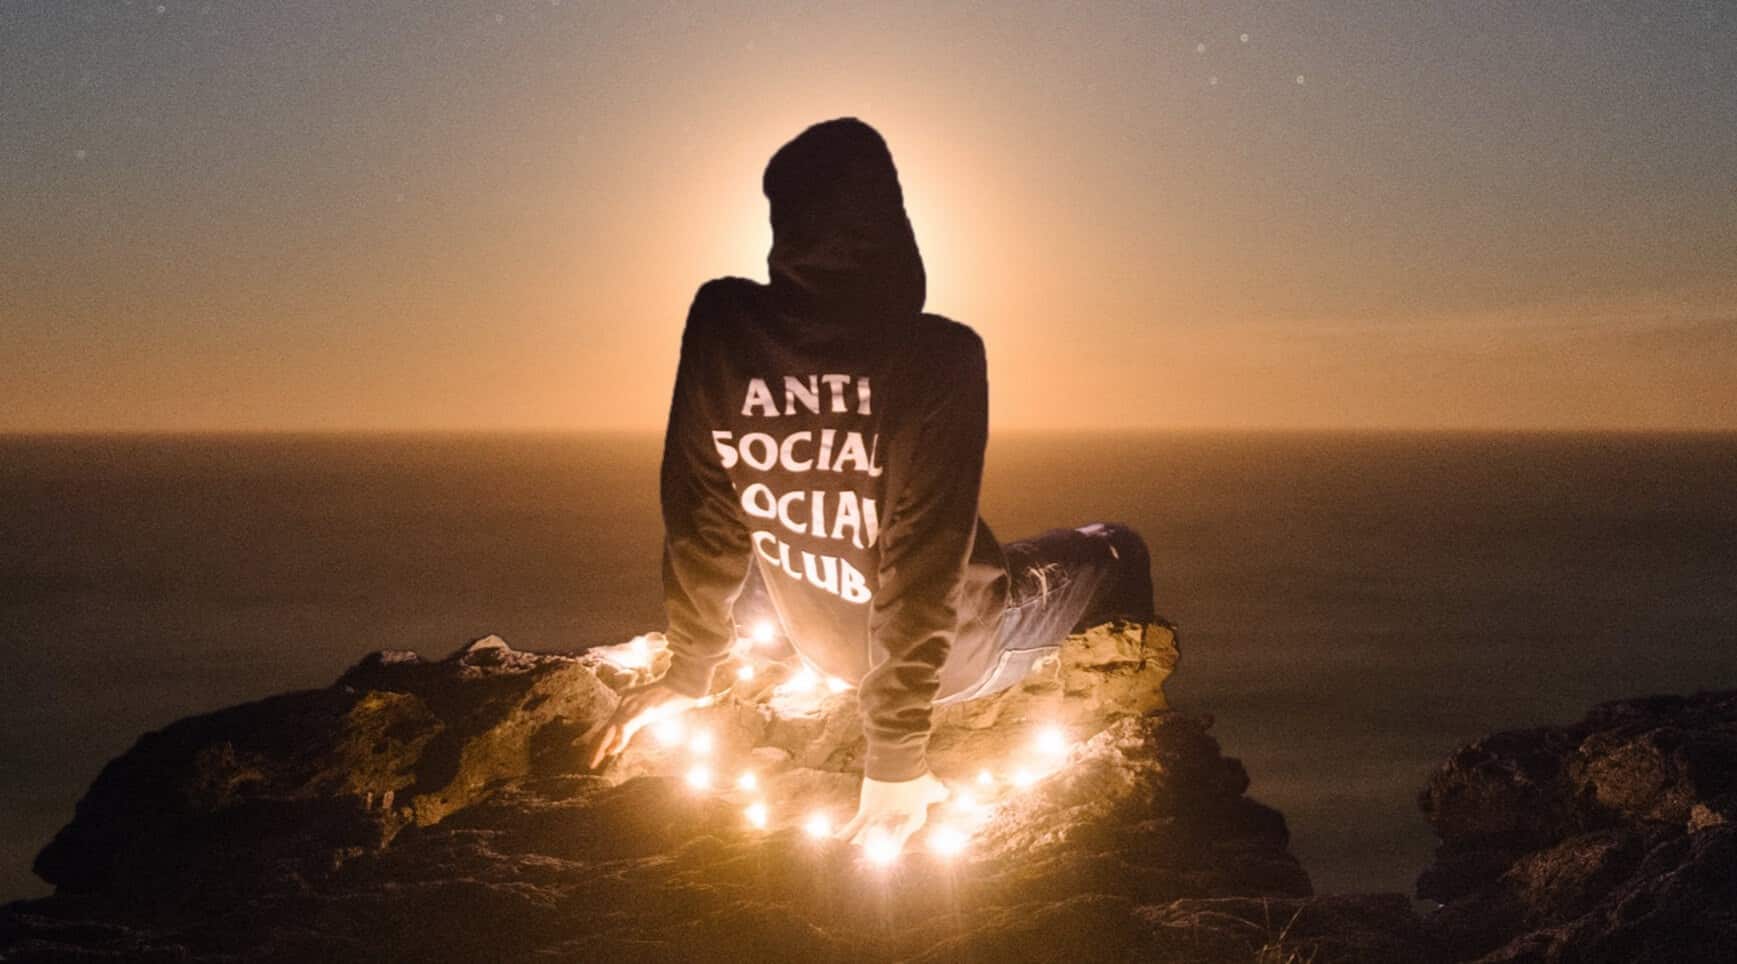 Cùng Khám Phá Anti Social Social Club Là Gì, Của Nước Nào?